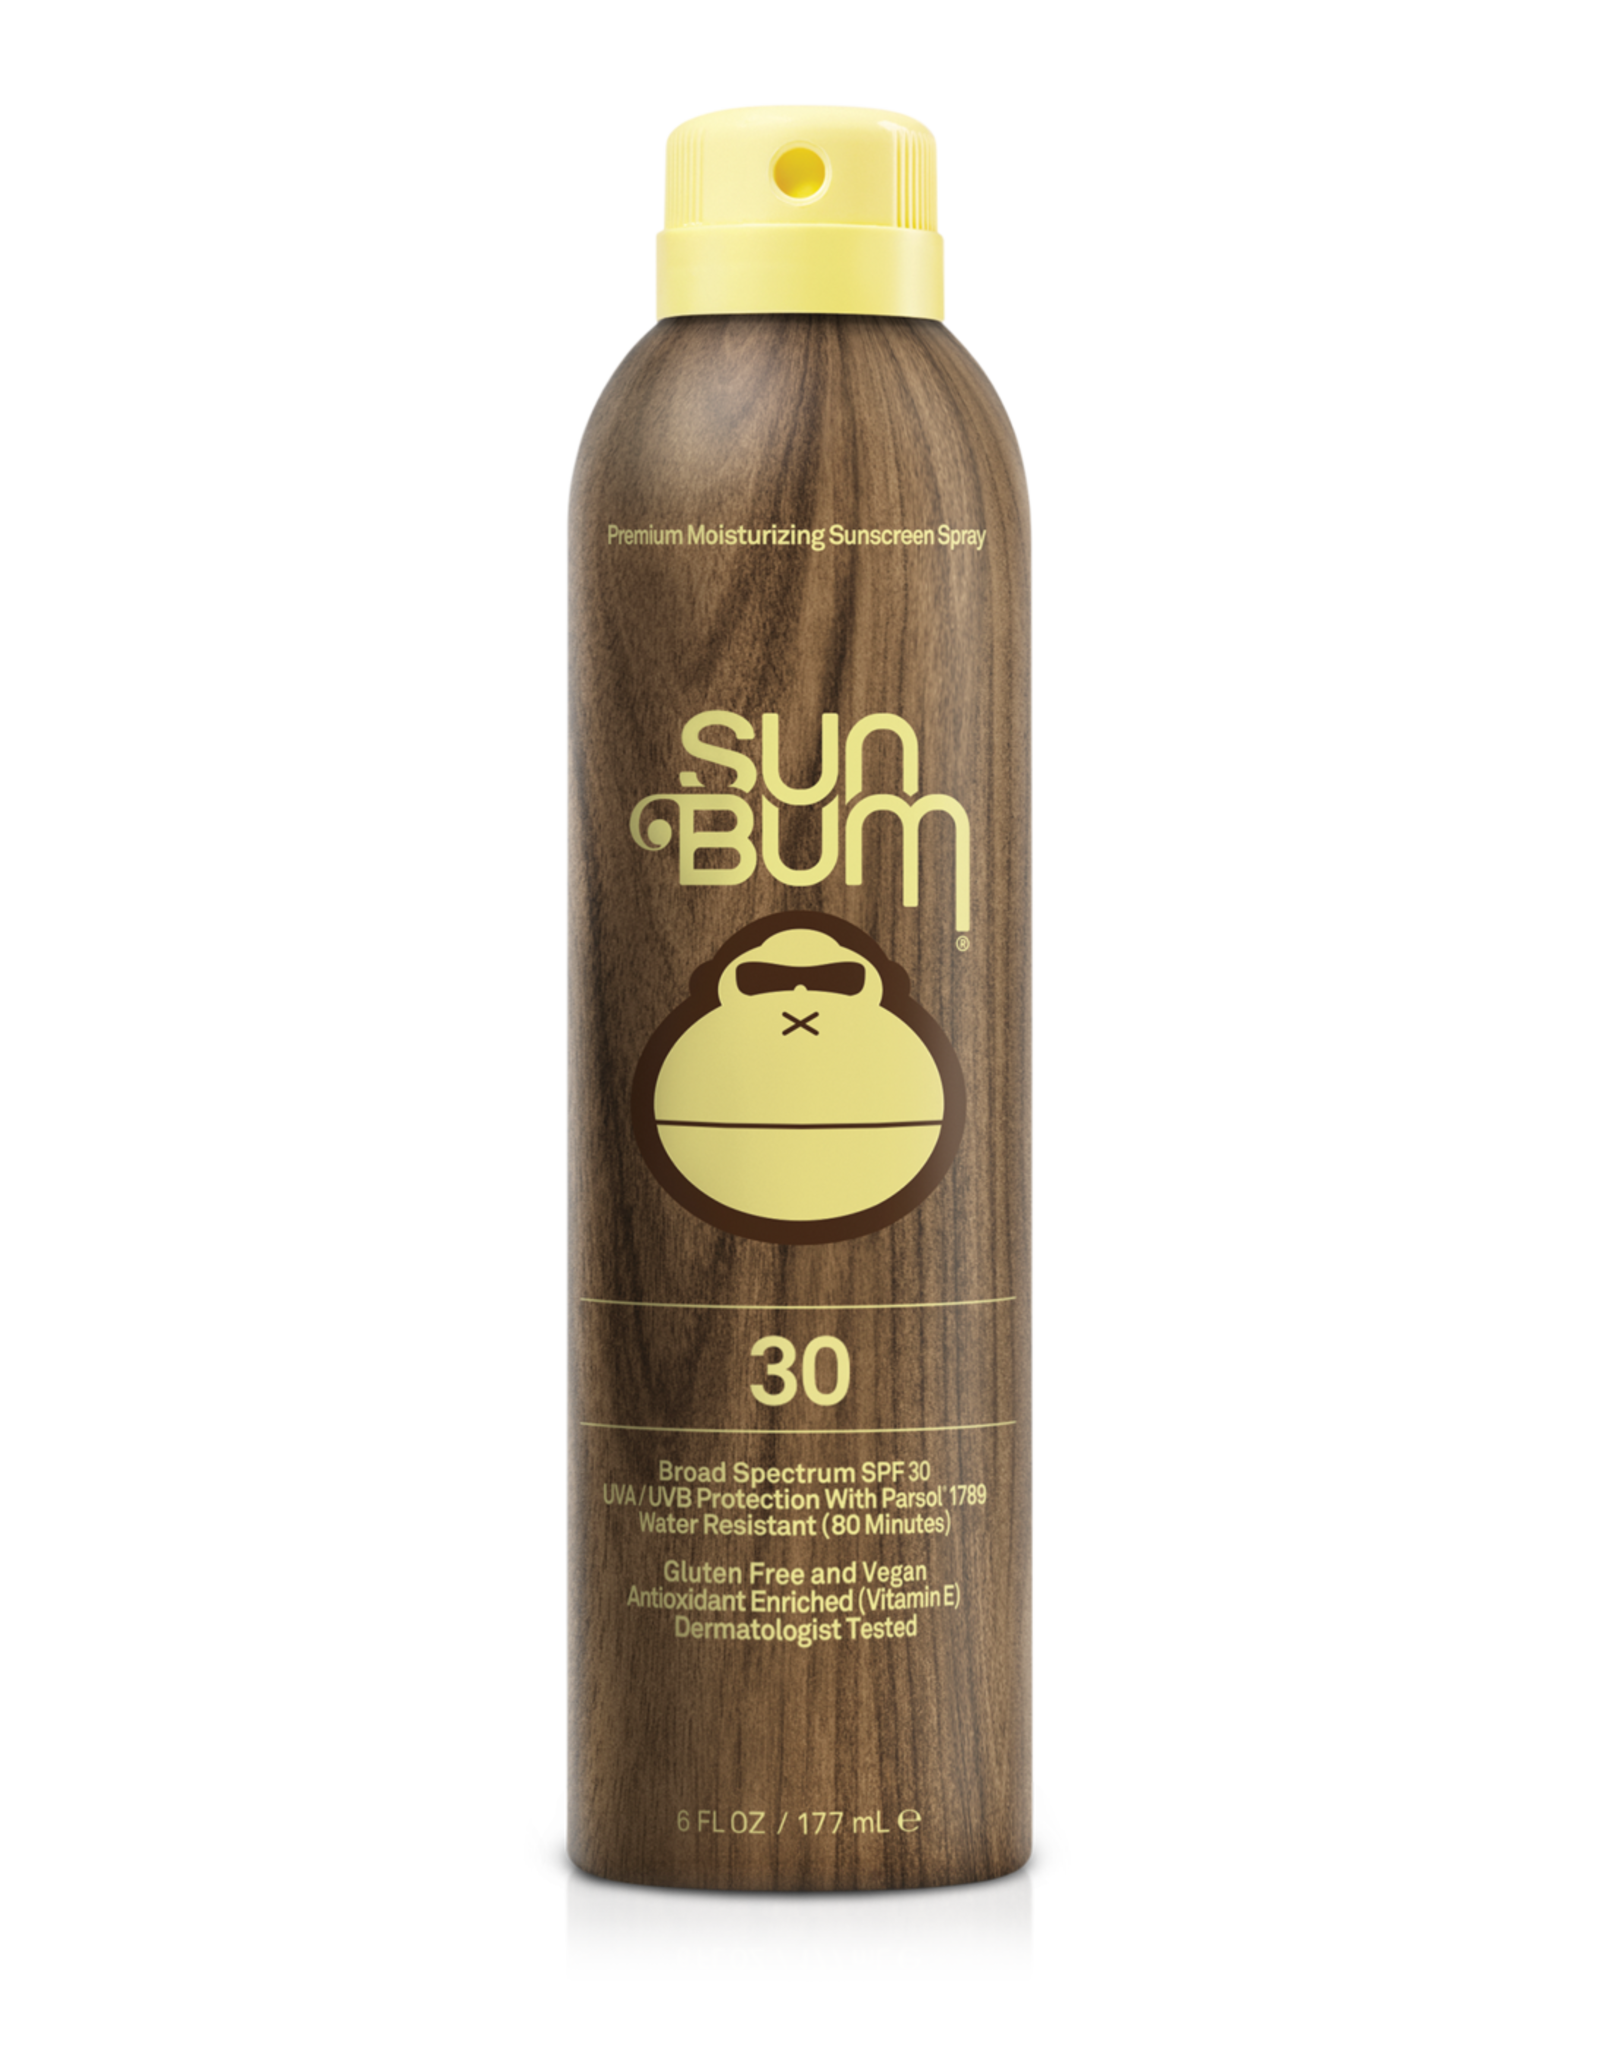 SunBum Sunbum Original SPF 30 Sunscreen Spray 6 oz